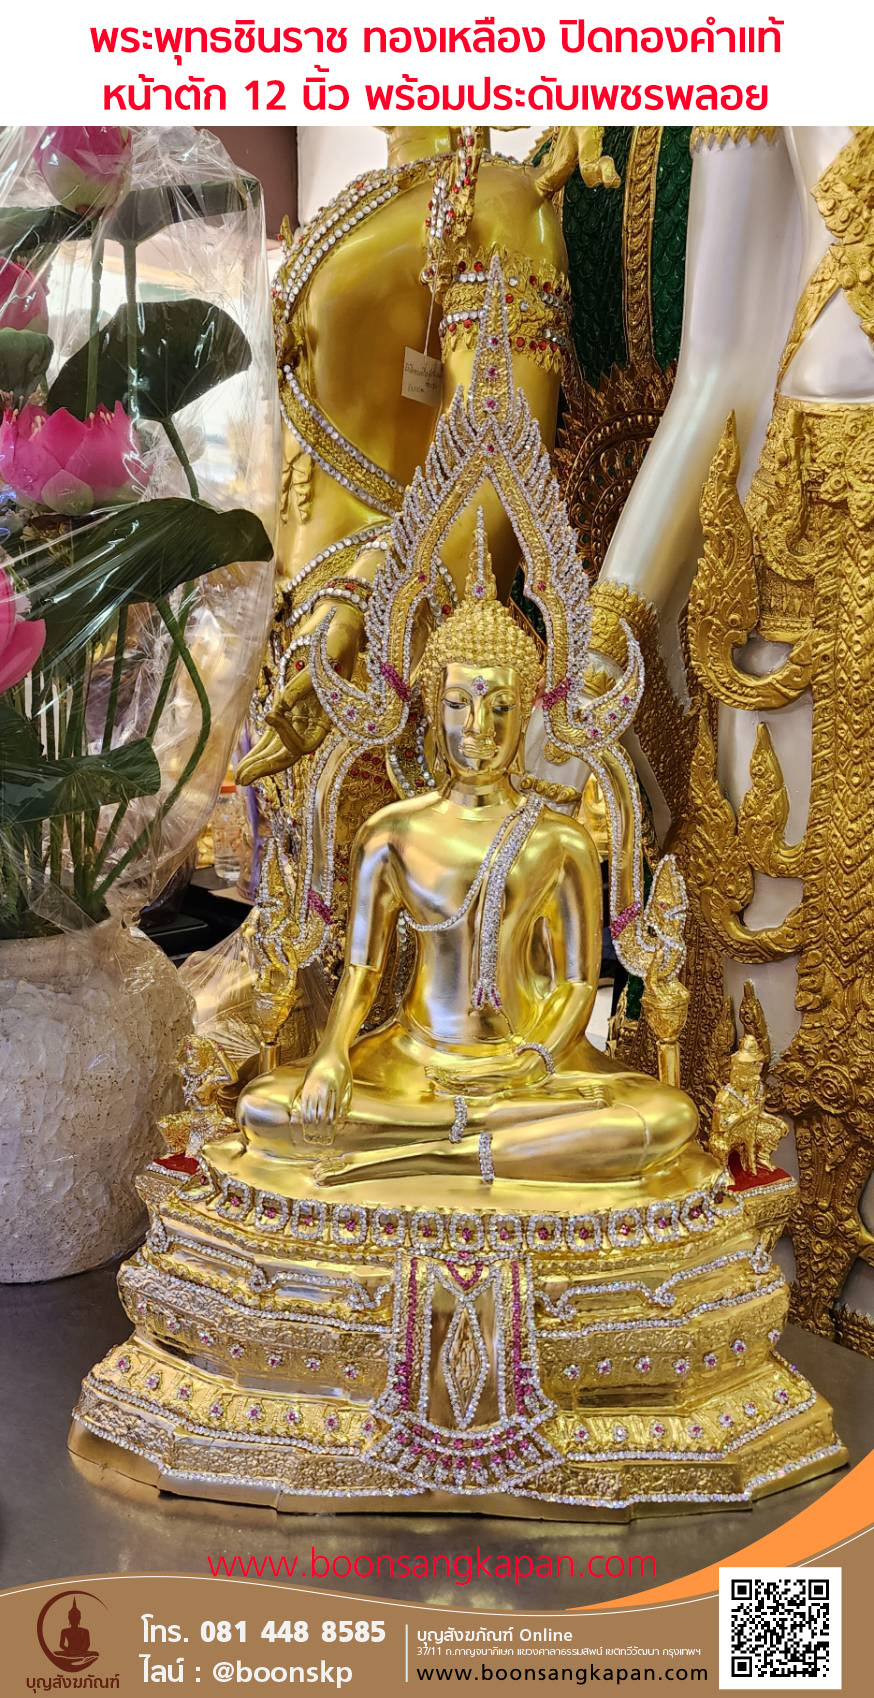 พระพุทธชินราช ทองเหลือง ปิดทองคำแท้ หน้าตัก 12 นิ้ว พร้อมประดับเพชรพลอย